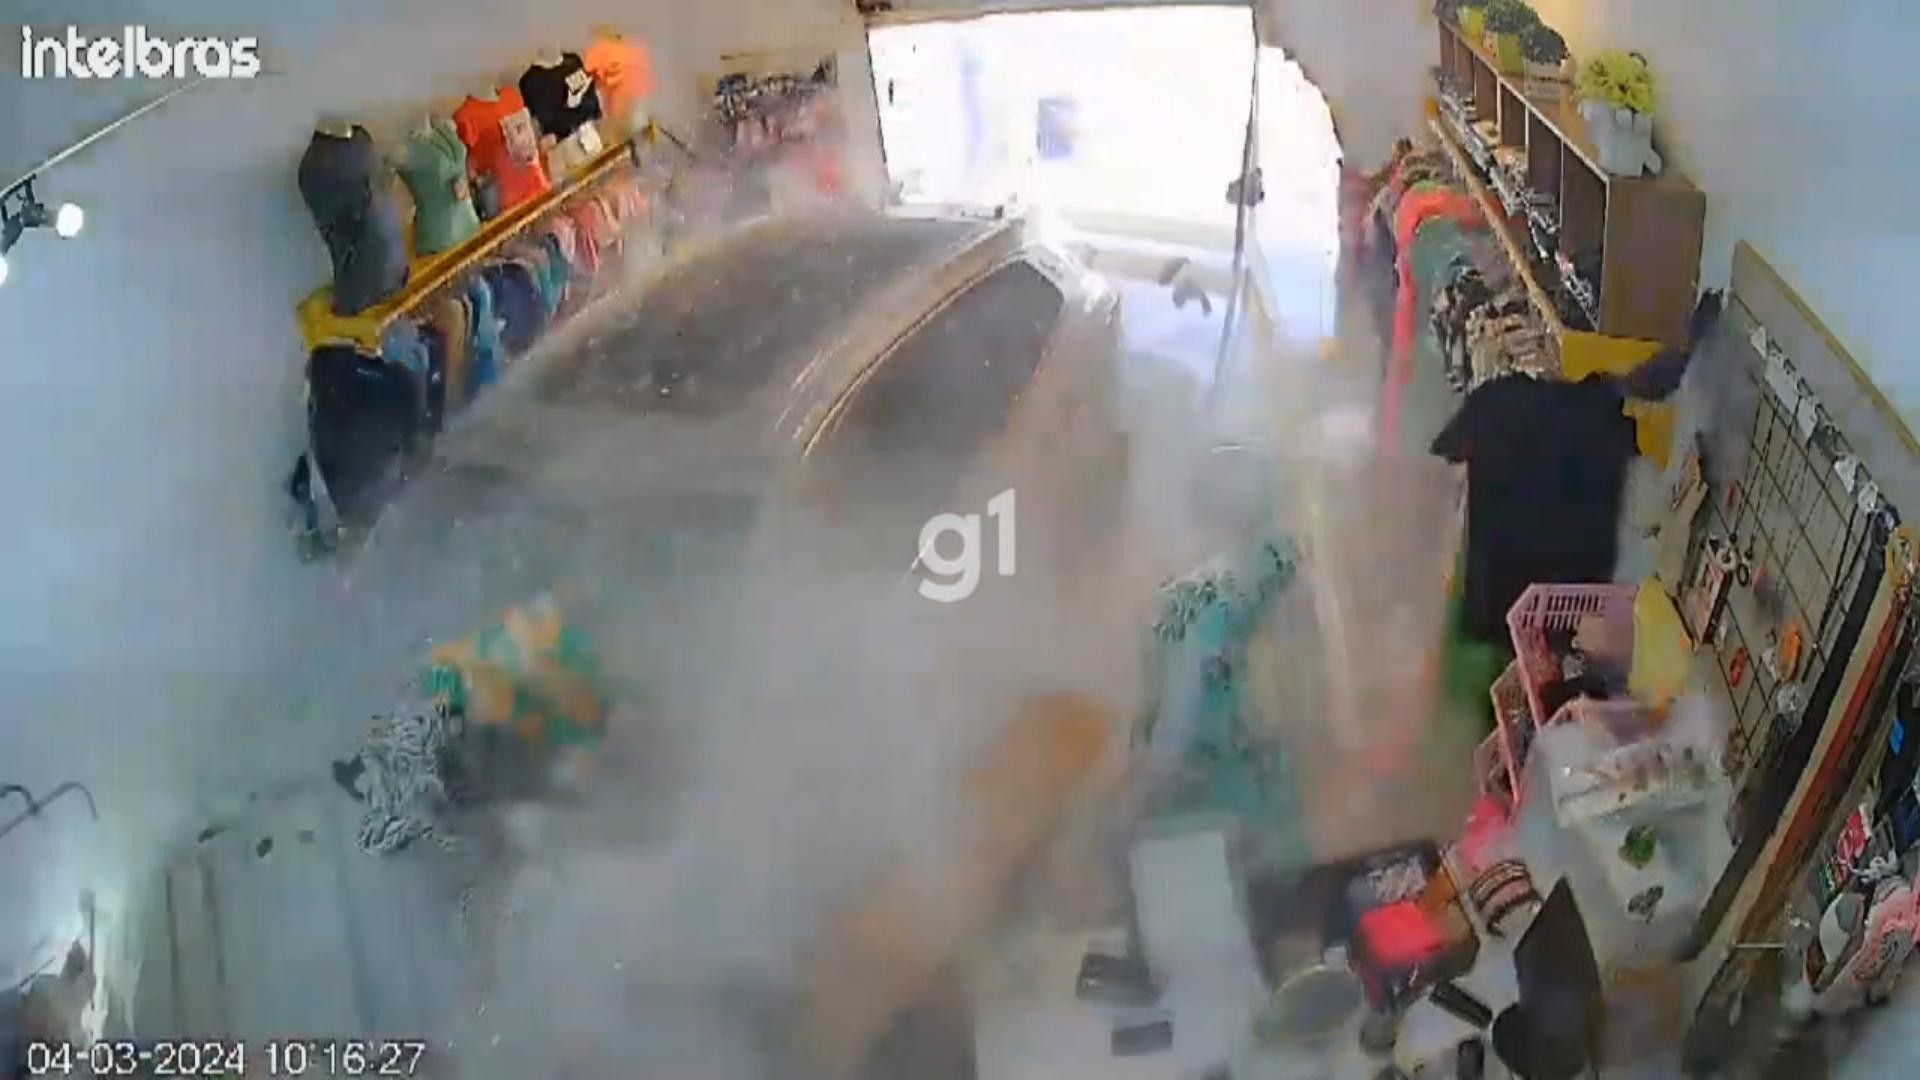 VÍDEO: Motorista perde controle do carro e invade loja de roupas em Curitiba